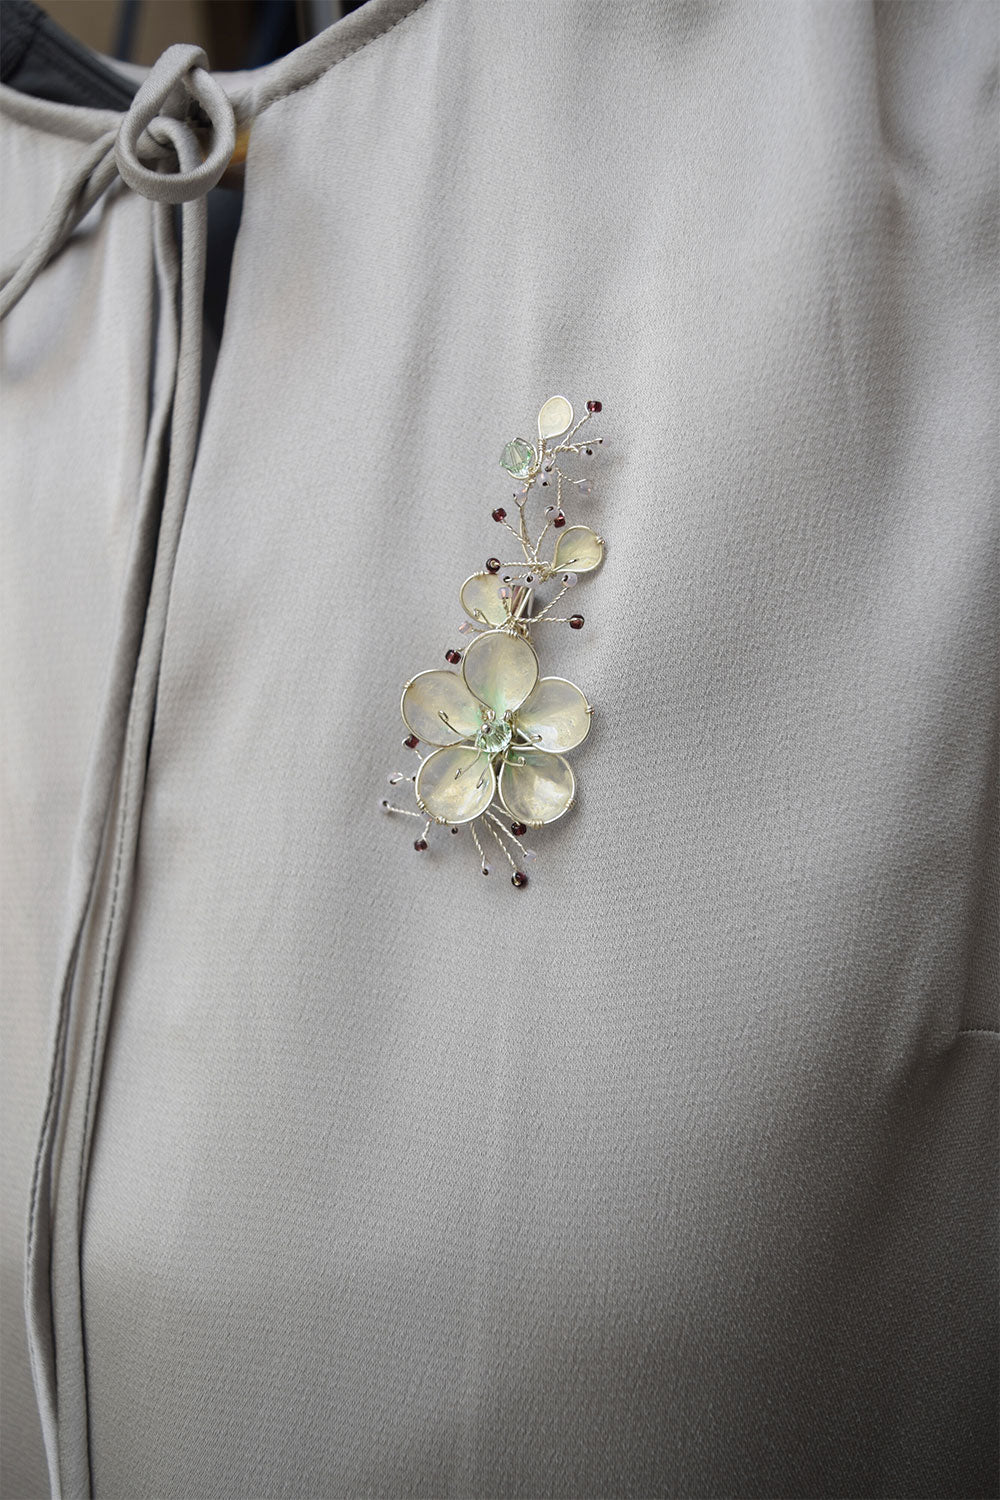 Cherry Blossom Brooch pin